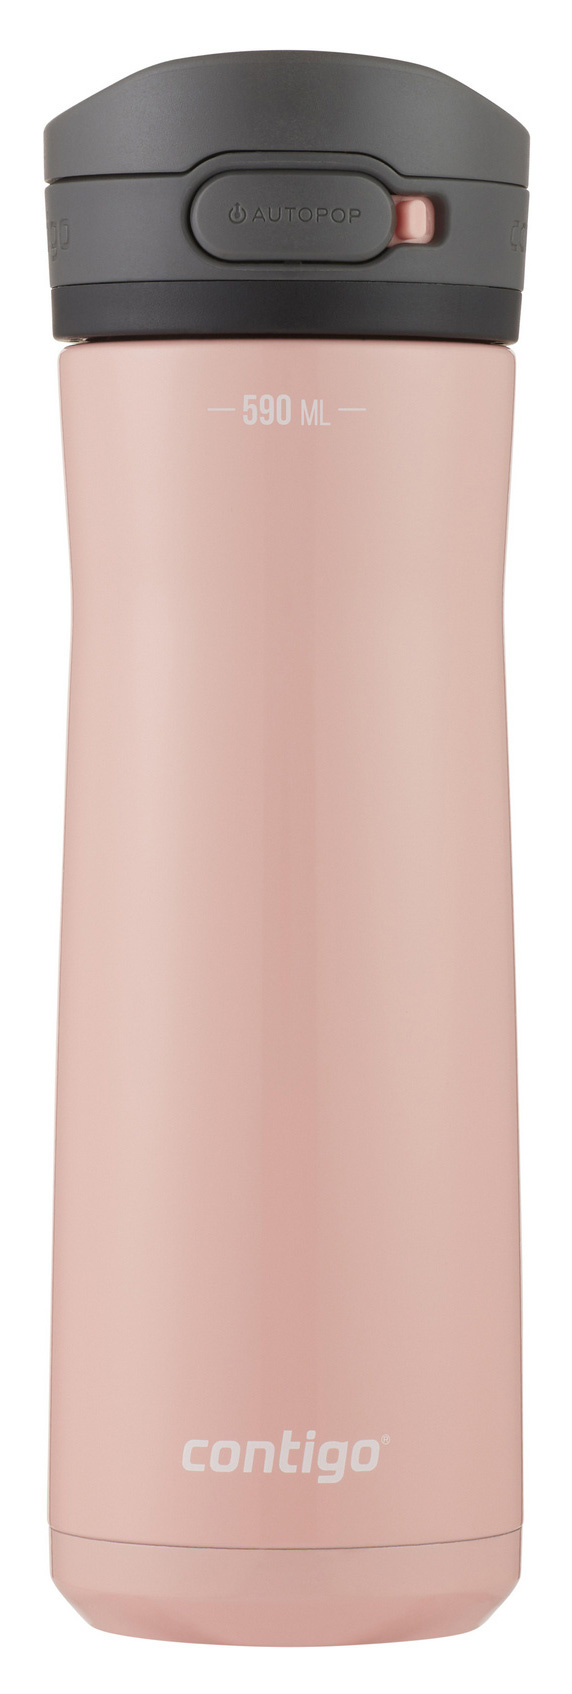 Термос-бутылка для напитков Contigo Jackson Chill 2.0 0.59л. розовый/черный (2156482)